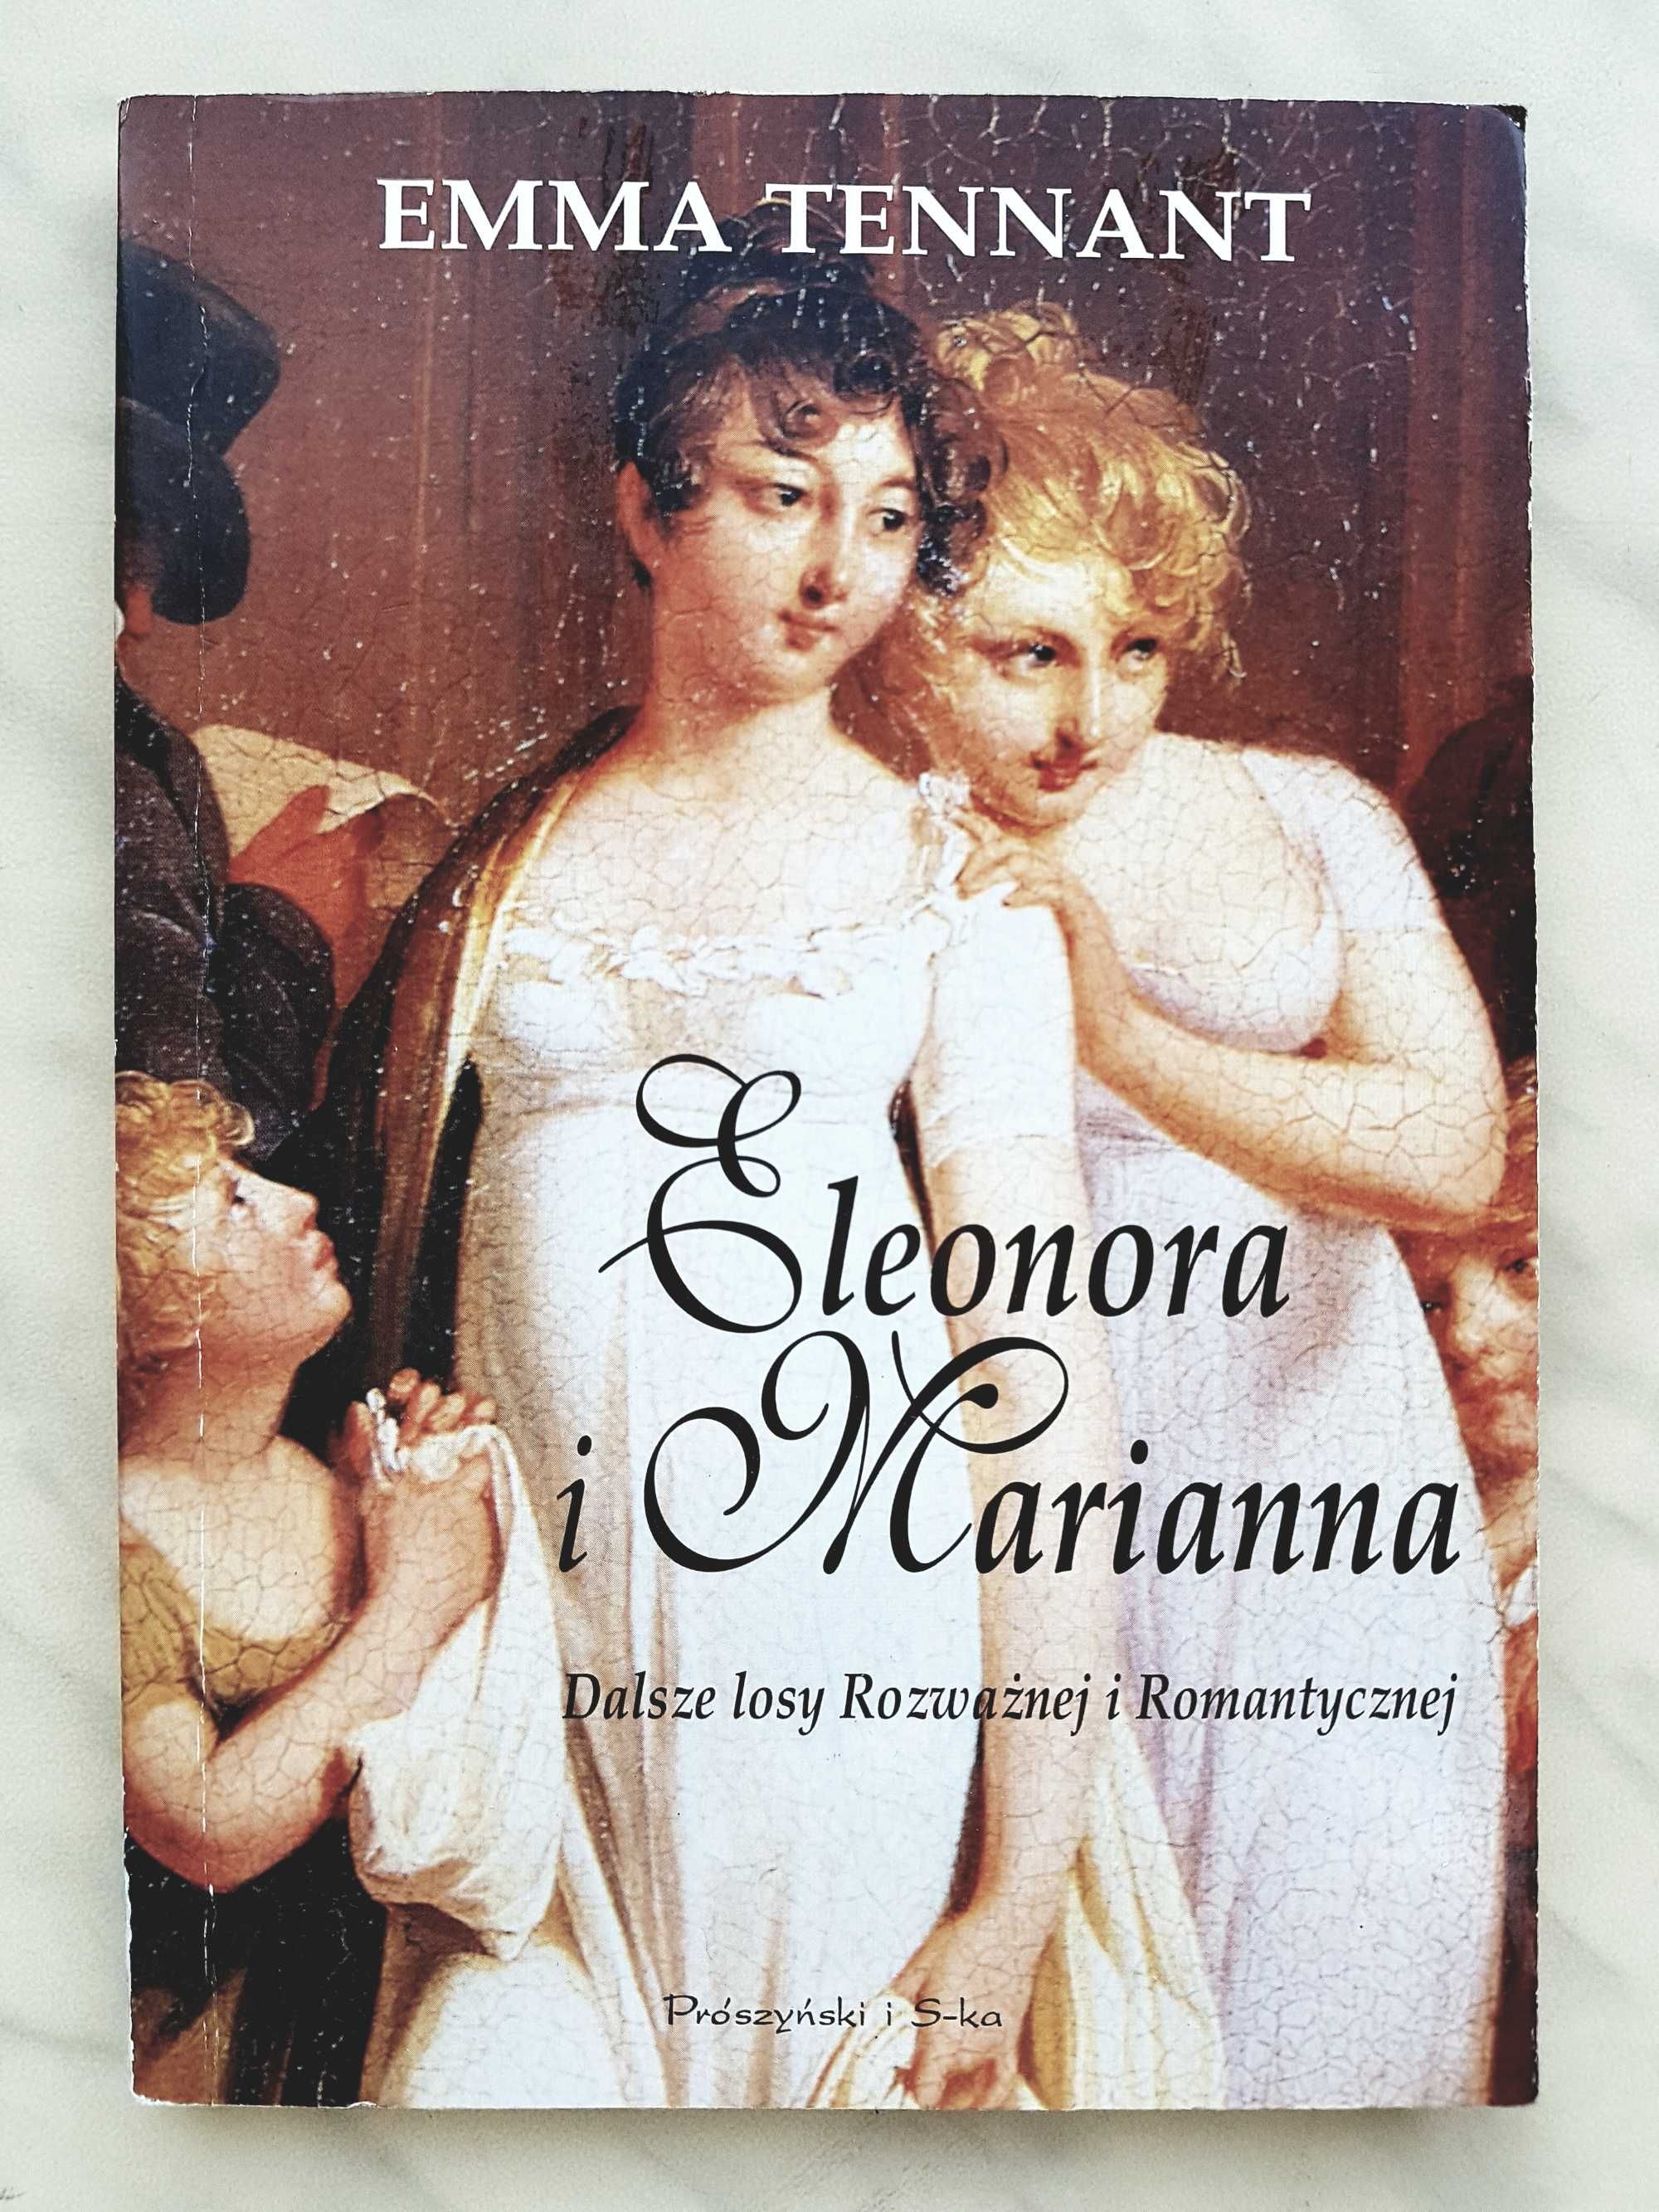 Sprzedam książkę "Eleonora i Marianna" Emmy Tennant